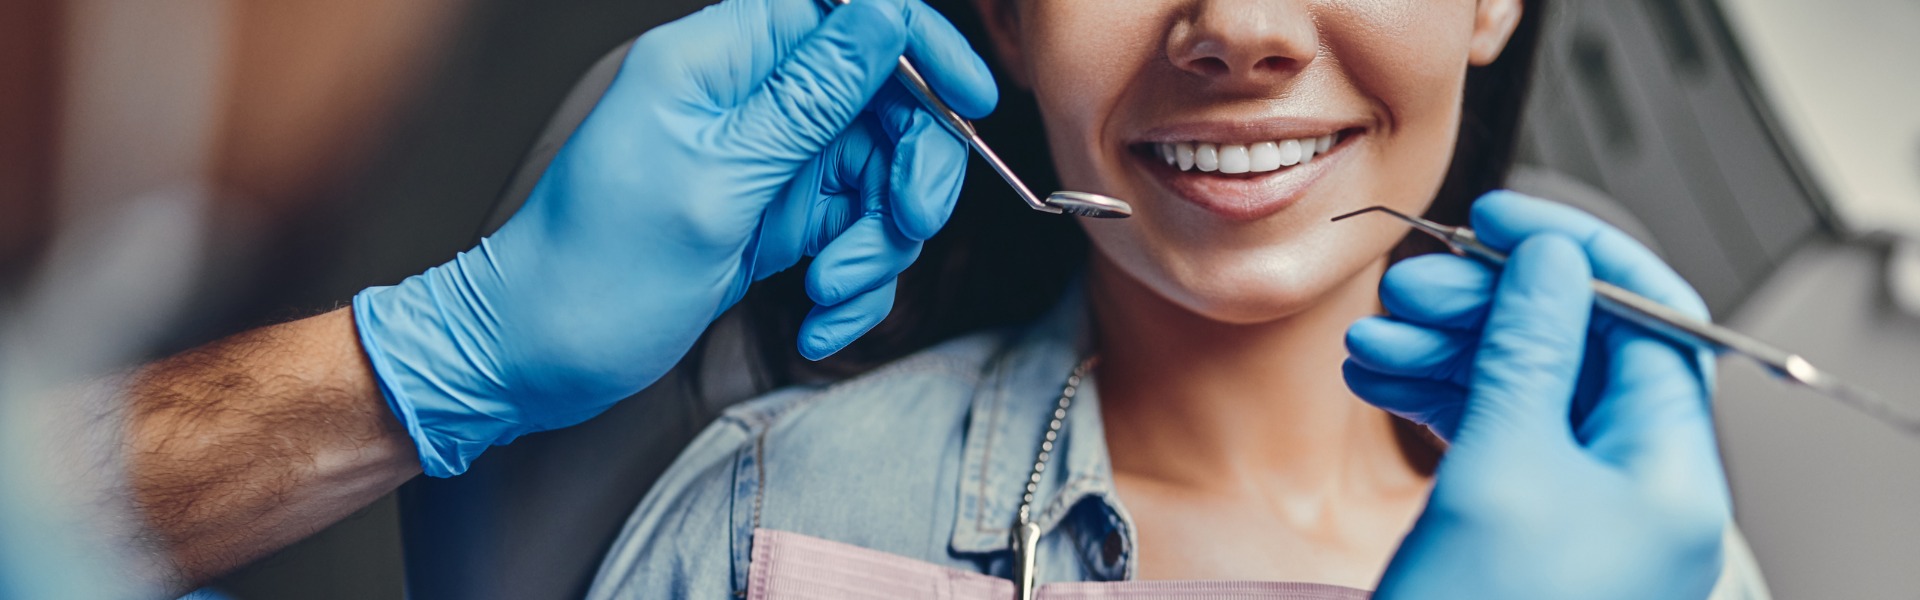 Dental hygienist gives handjob